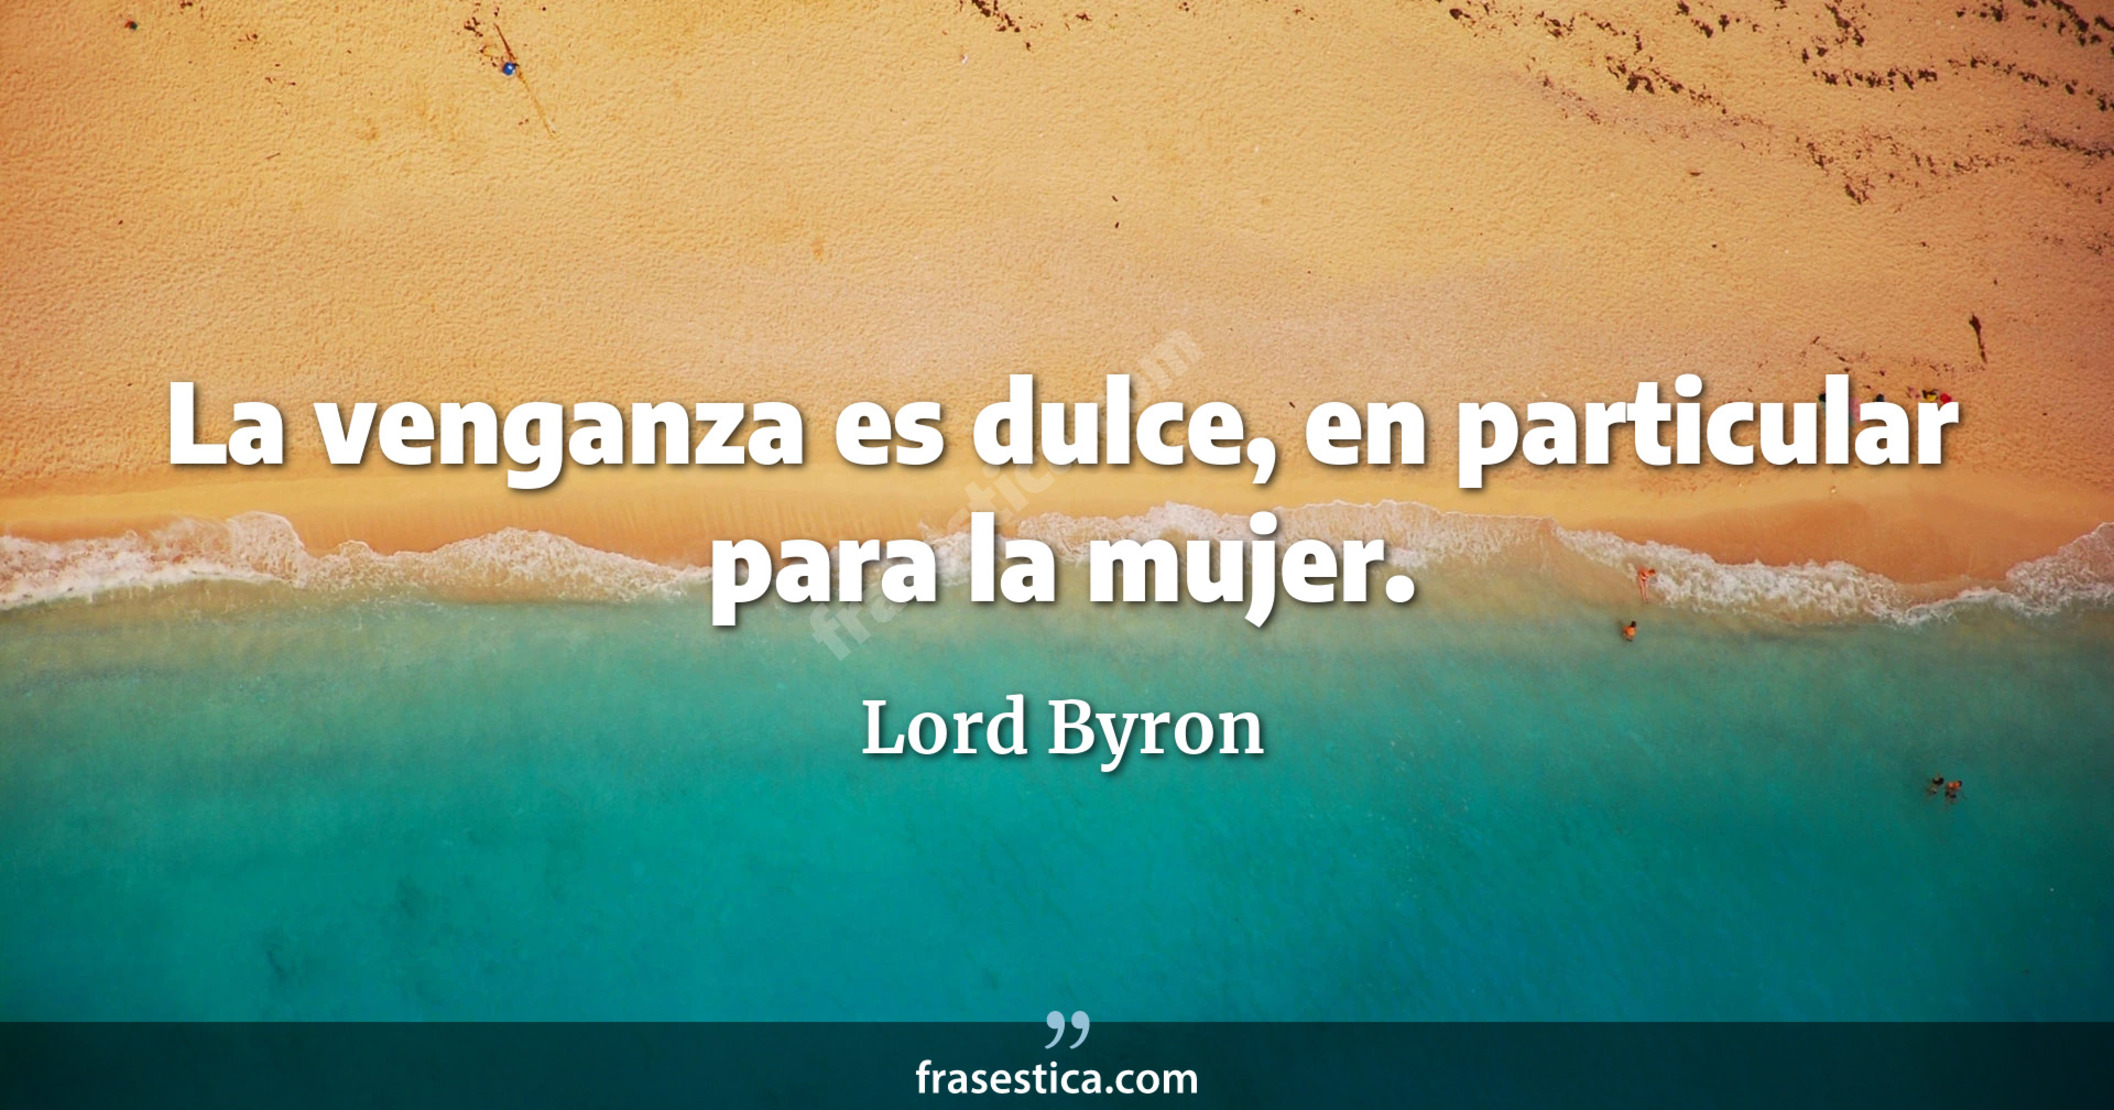 La venganza es dulce, en particular para la mujer. - Lord Byron